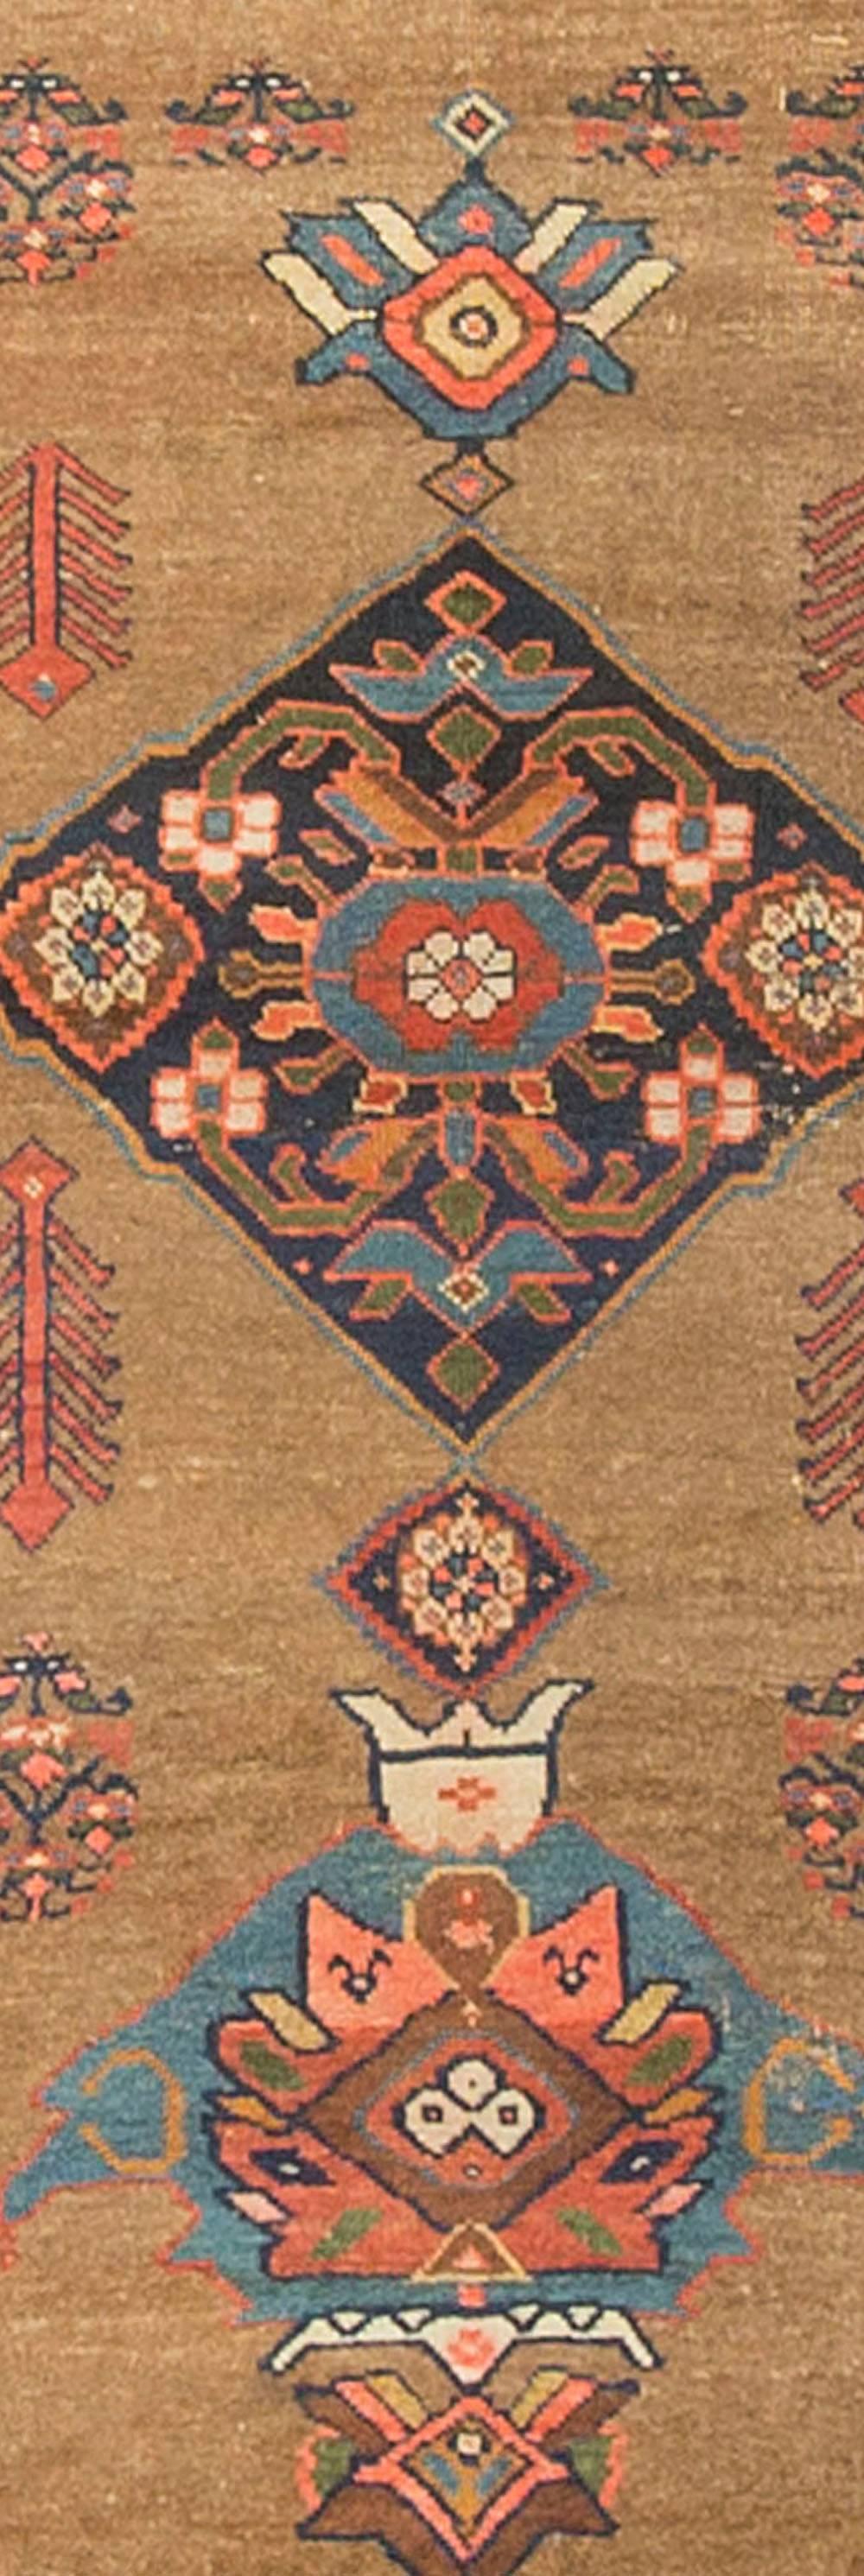 Un ancien tapis persan Bidjar datant des années 1920. Les couleurs sont utilisées intelligemment dans le dessin, les bleus clairs et les bleus foncés donnent un point focal et la bordure principale remplie de têtes de fleurs colorées complète le